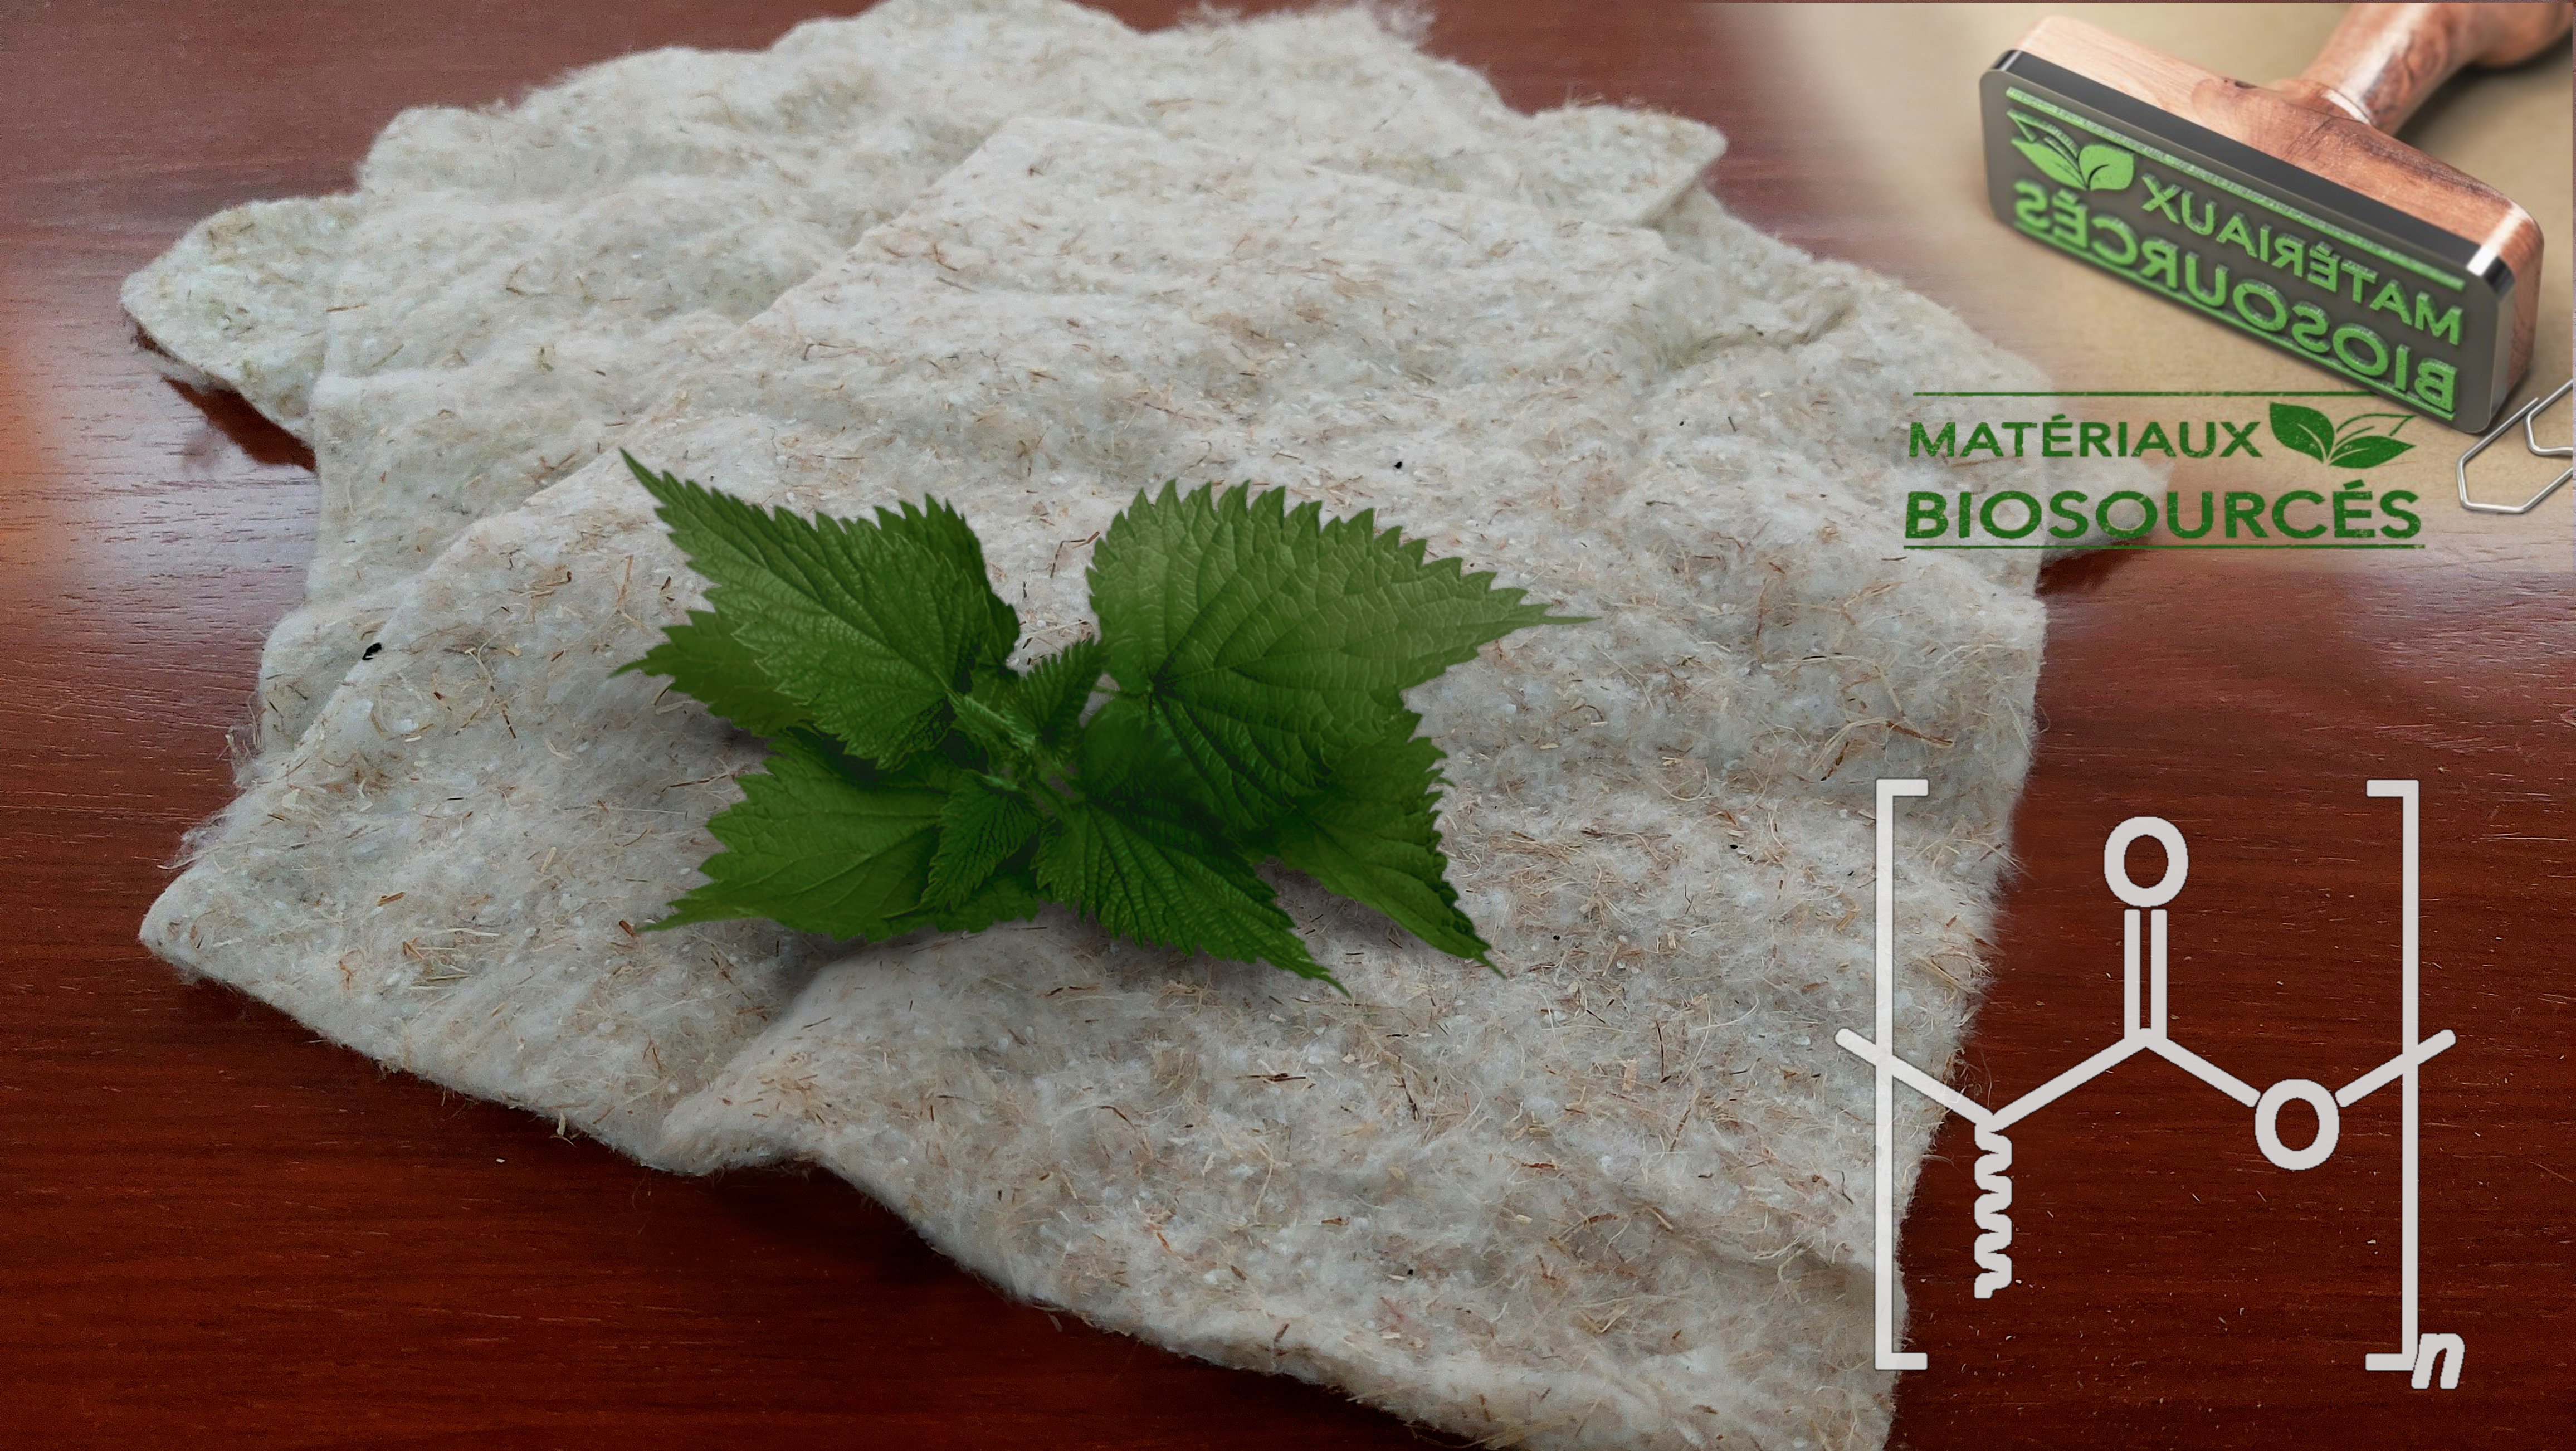 Nouveaux matériaux composites biosourcés renforcés en fibres végétales